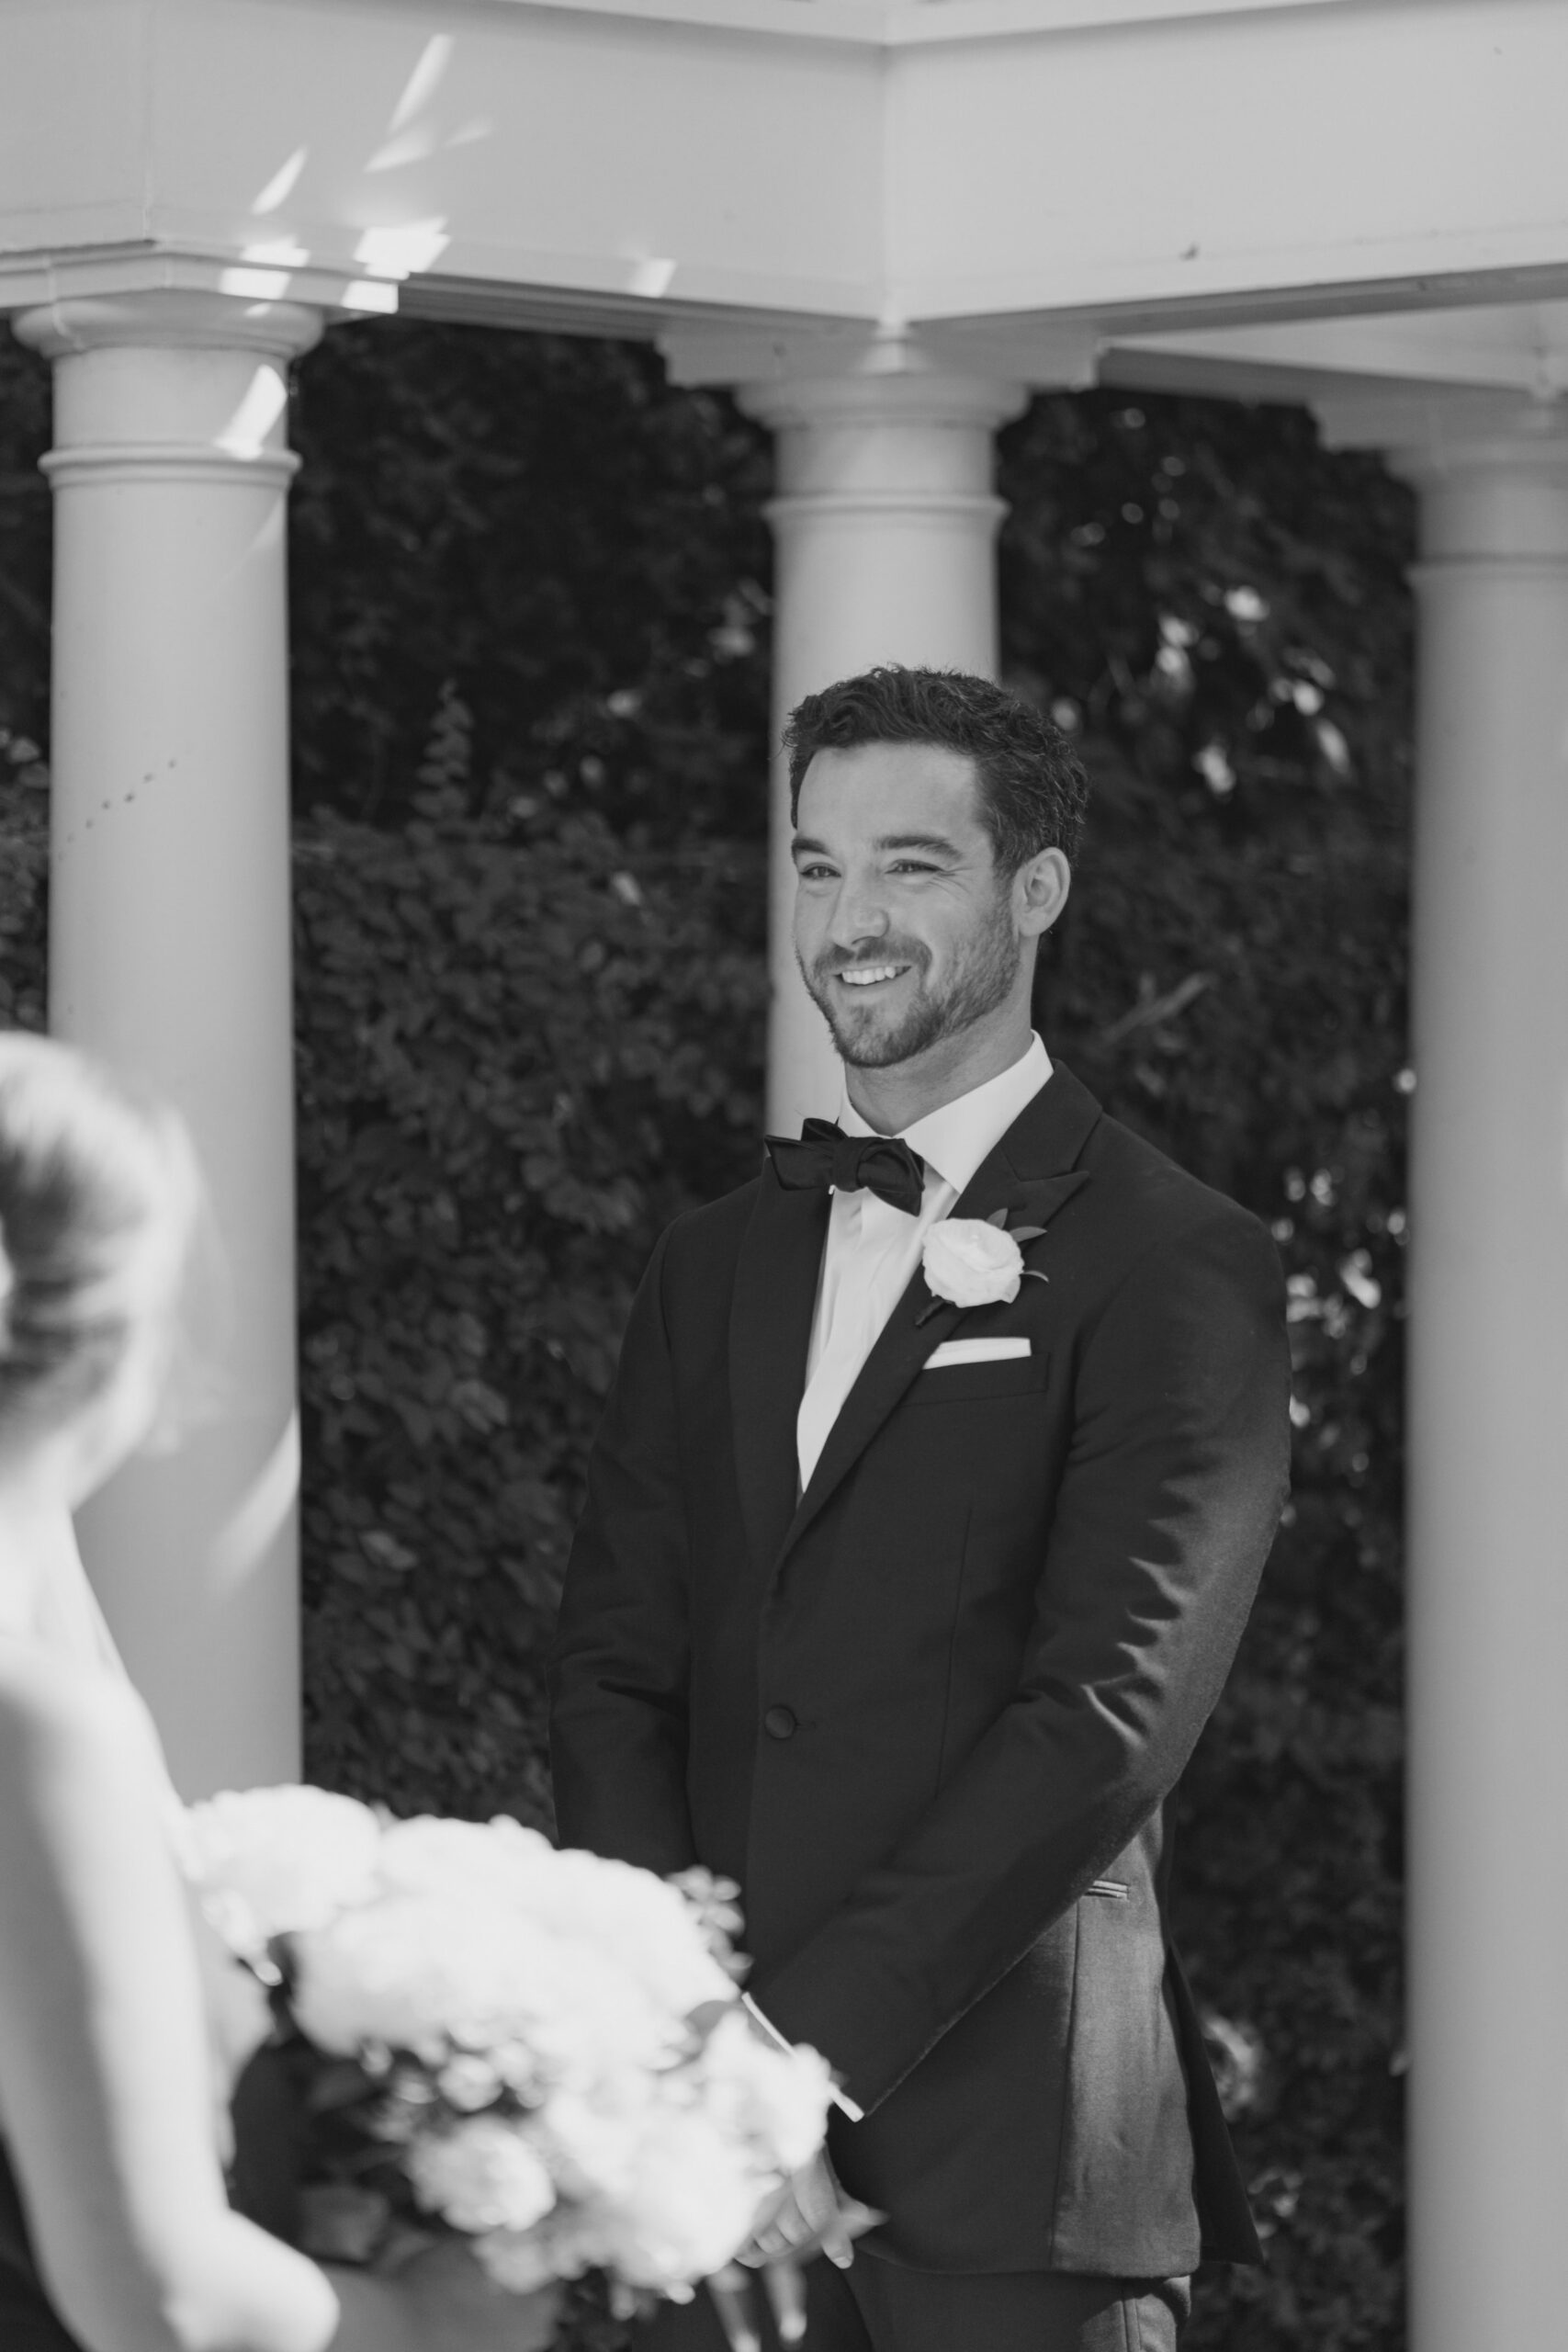 Groom black and white wedding ceremony photo.